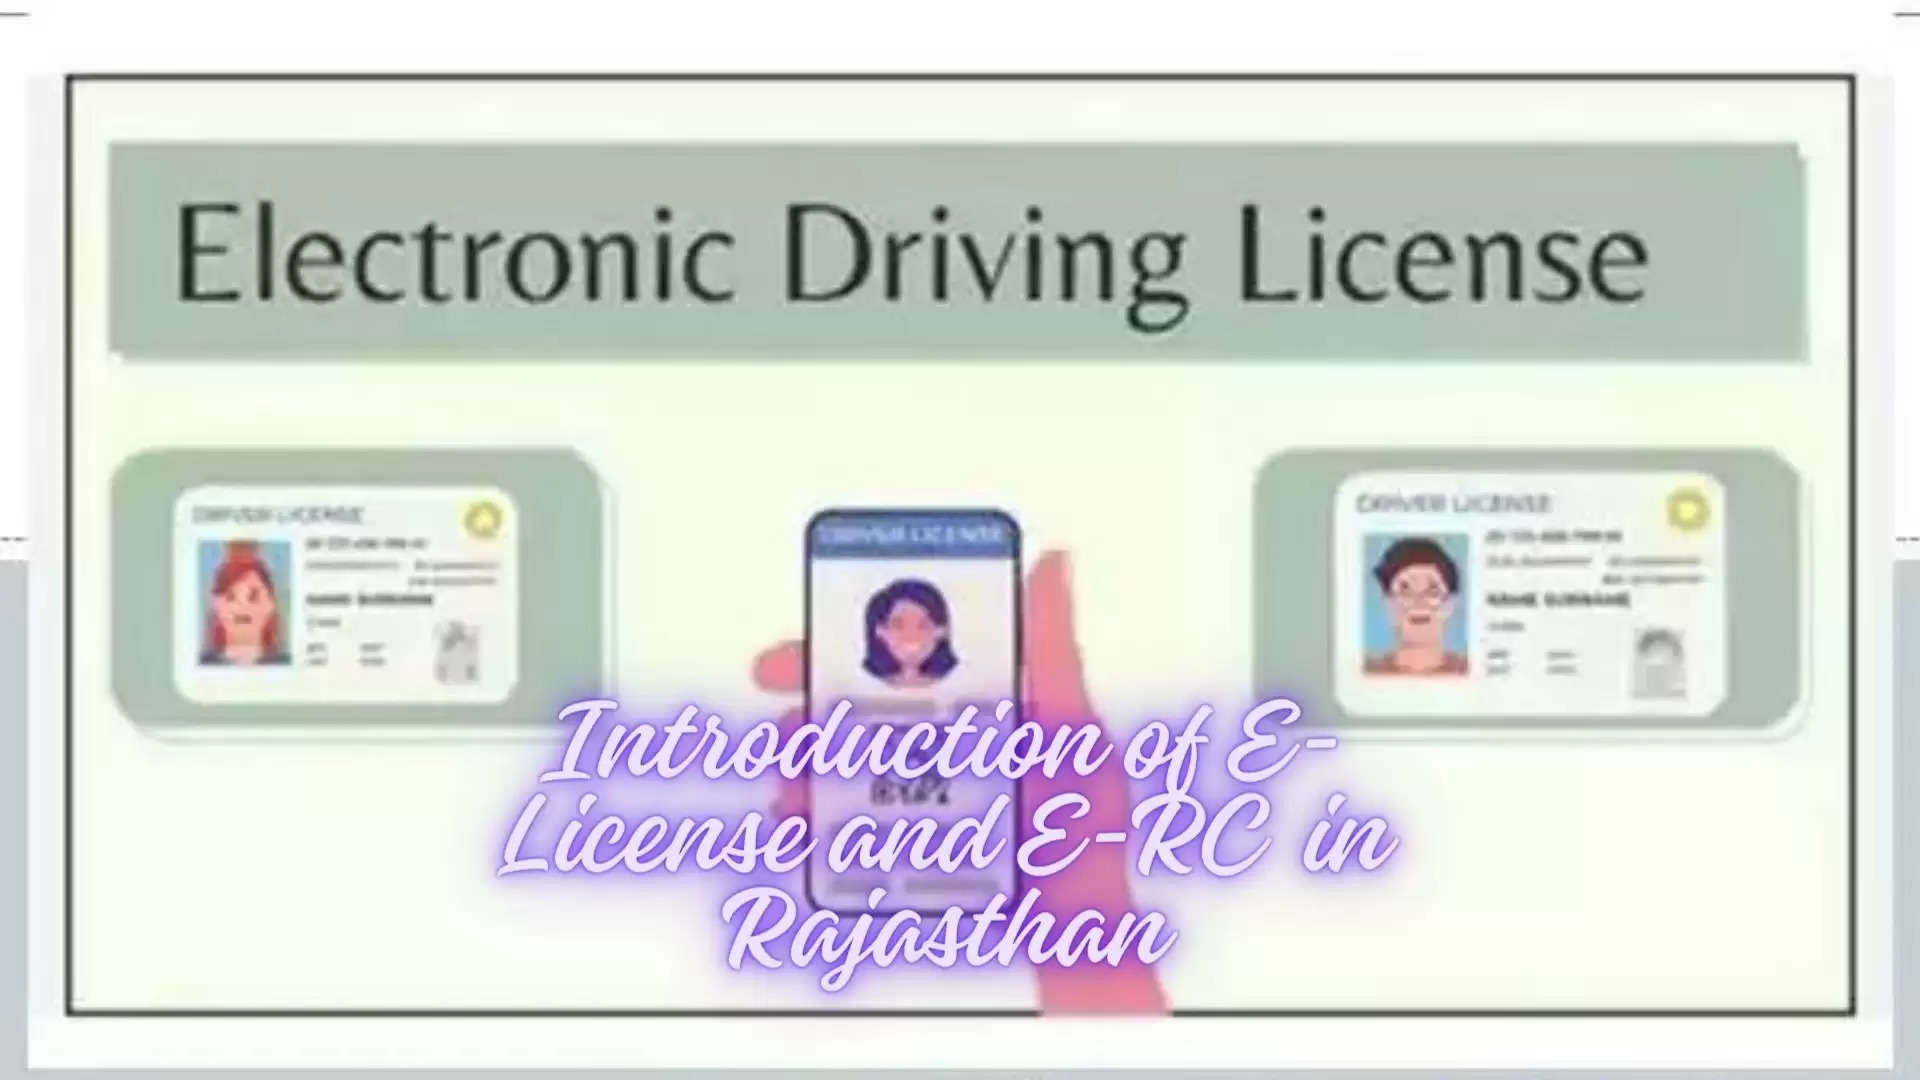 e license and e-rc